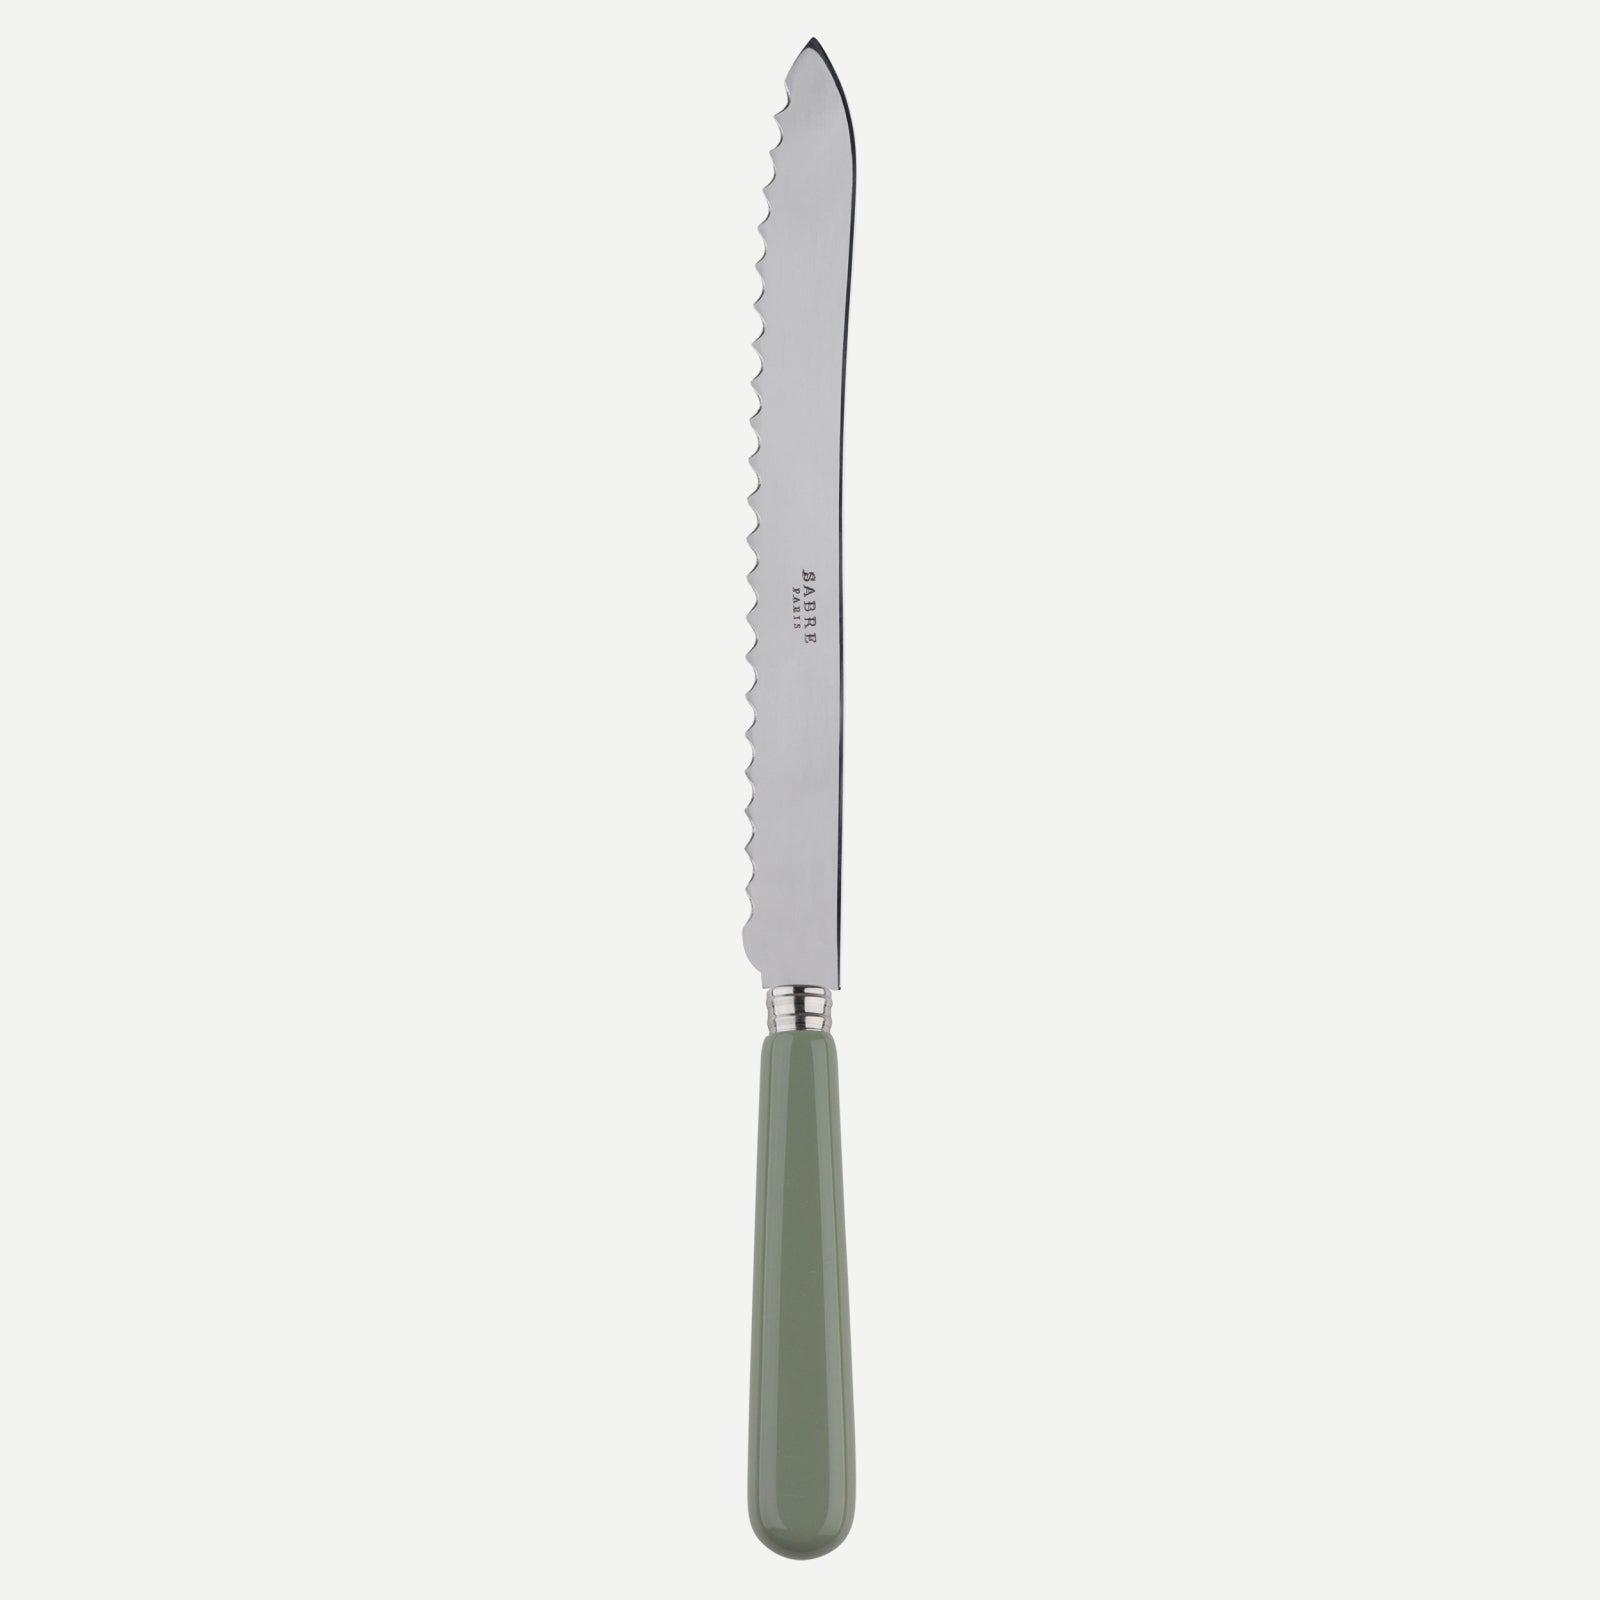 Bread knife - Pop unis - Asparagus